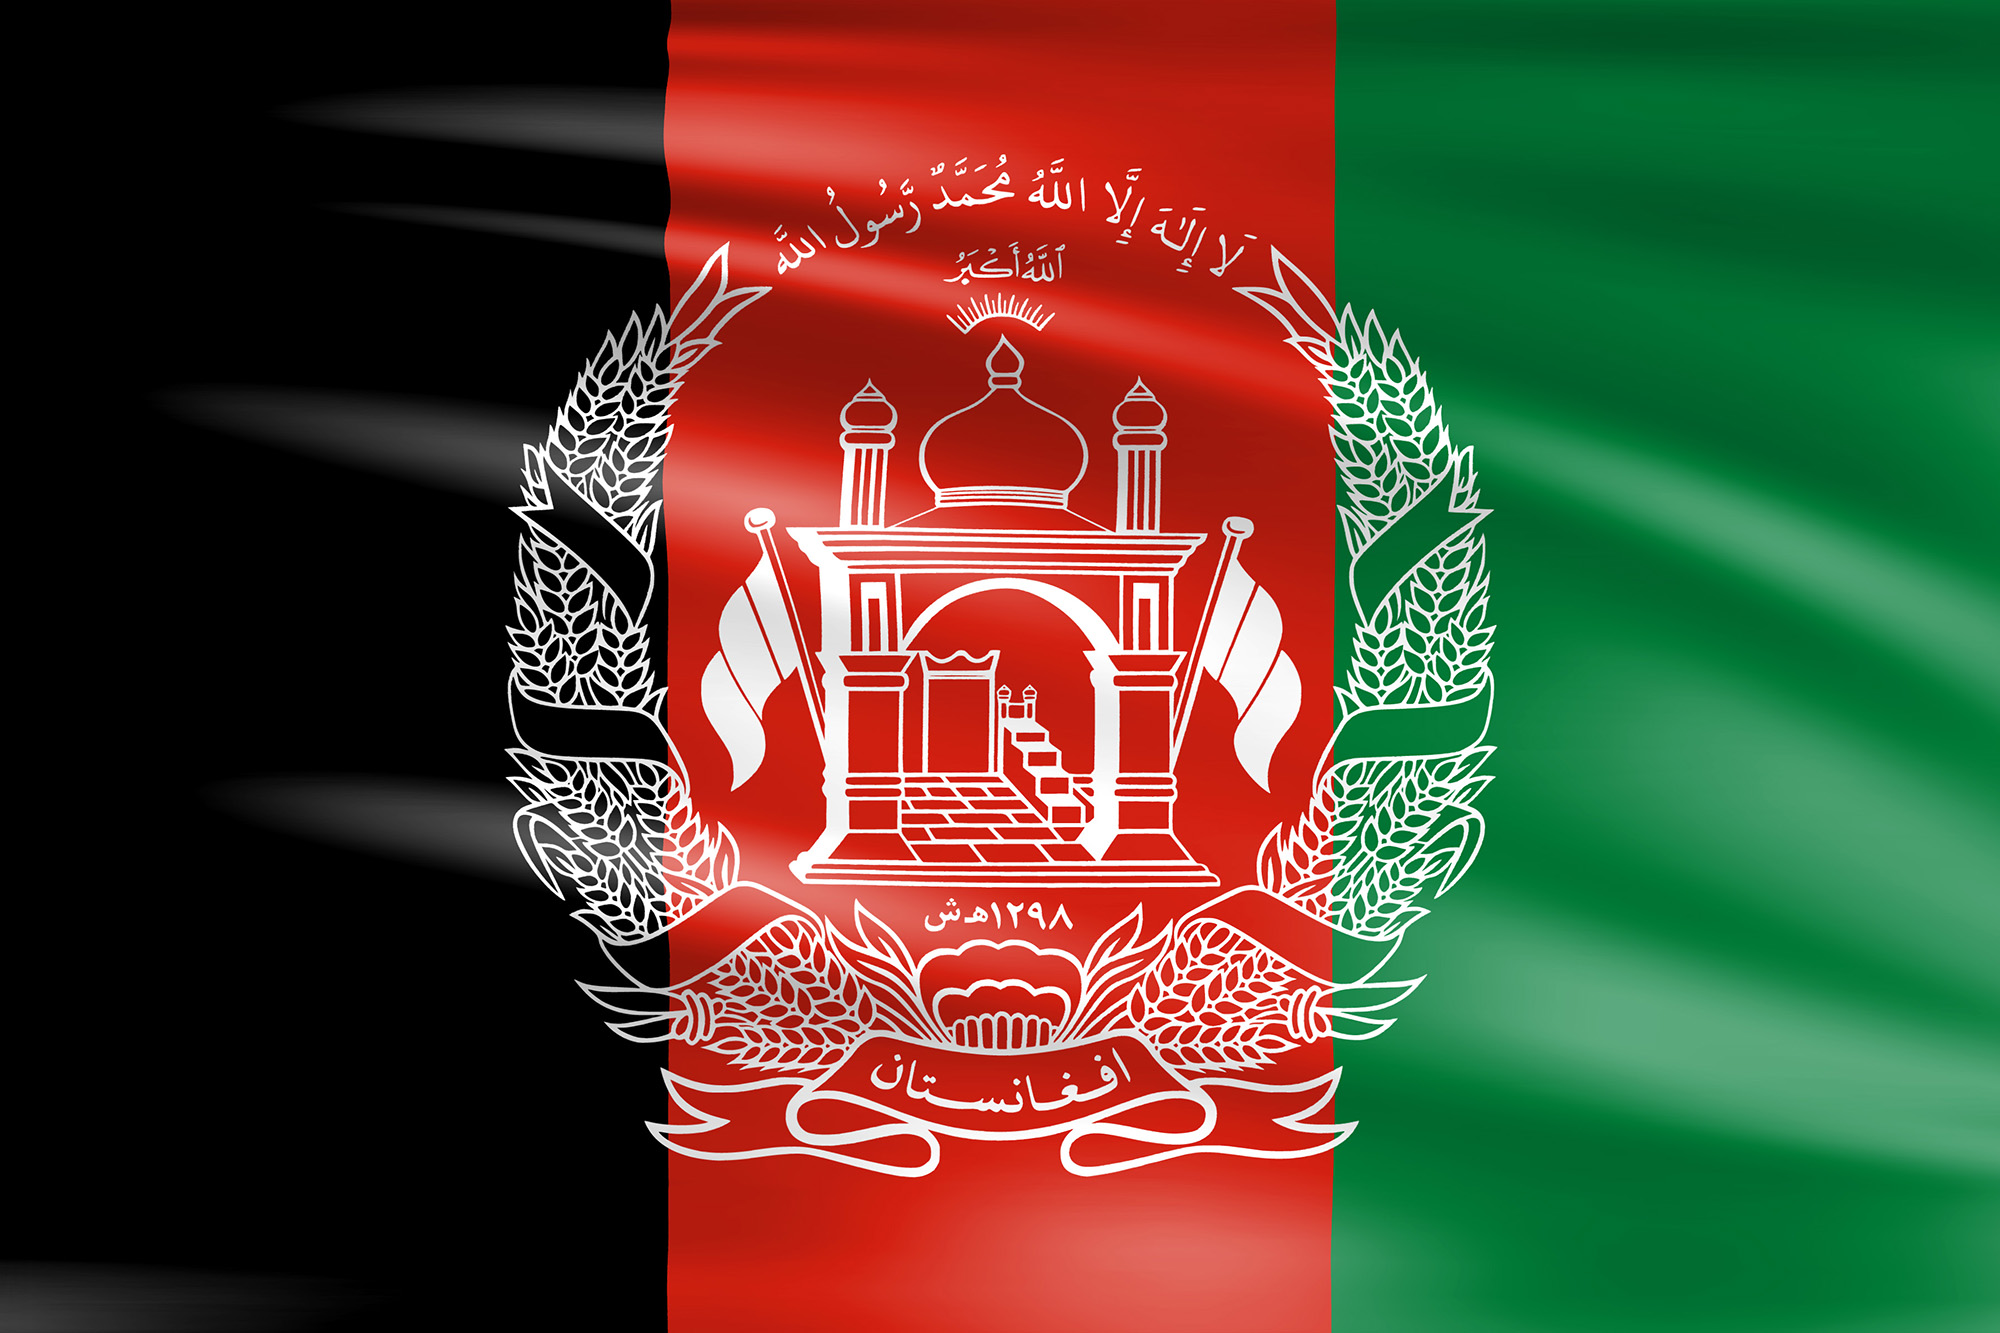 https://www.wagrati.eu/media/images/flagge-afghanistan-2000x1333.jpg